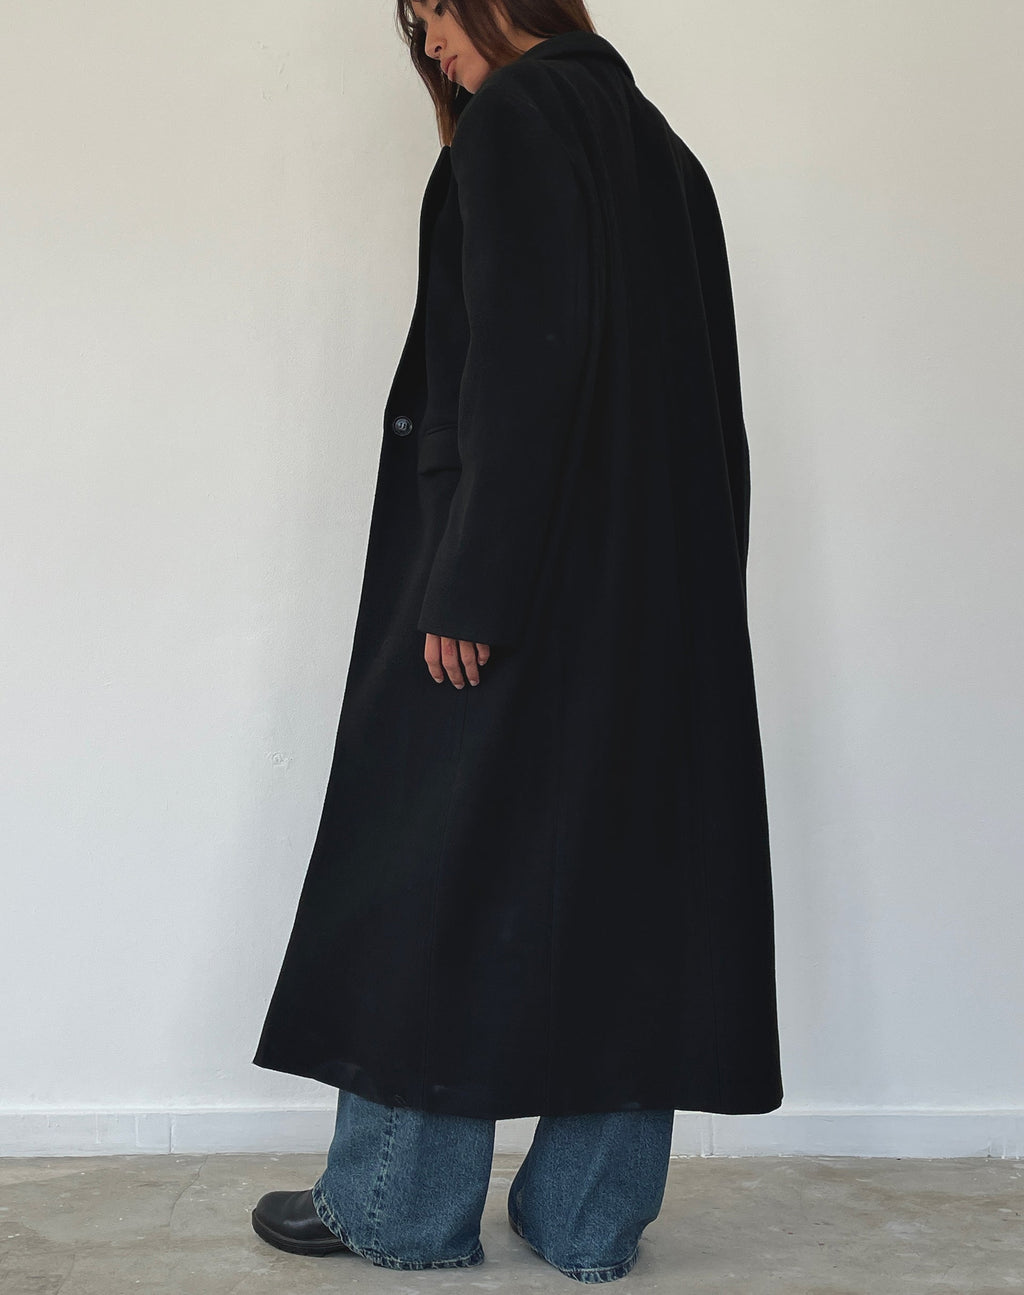 Melani Longline Coat in Black